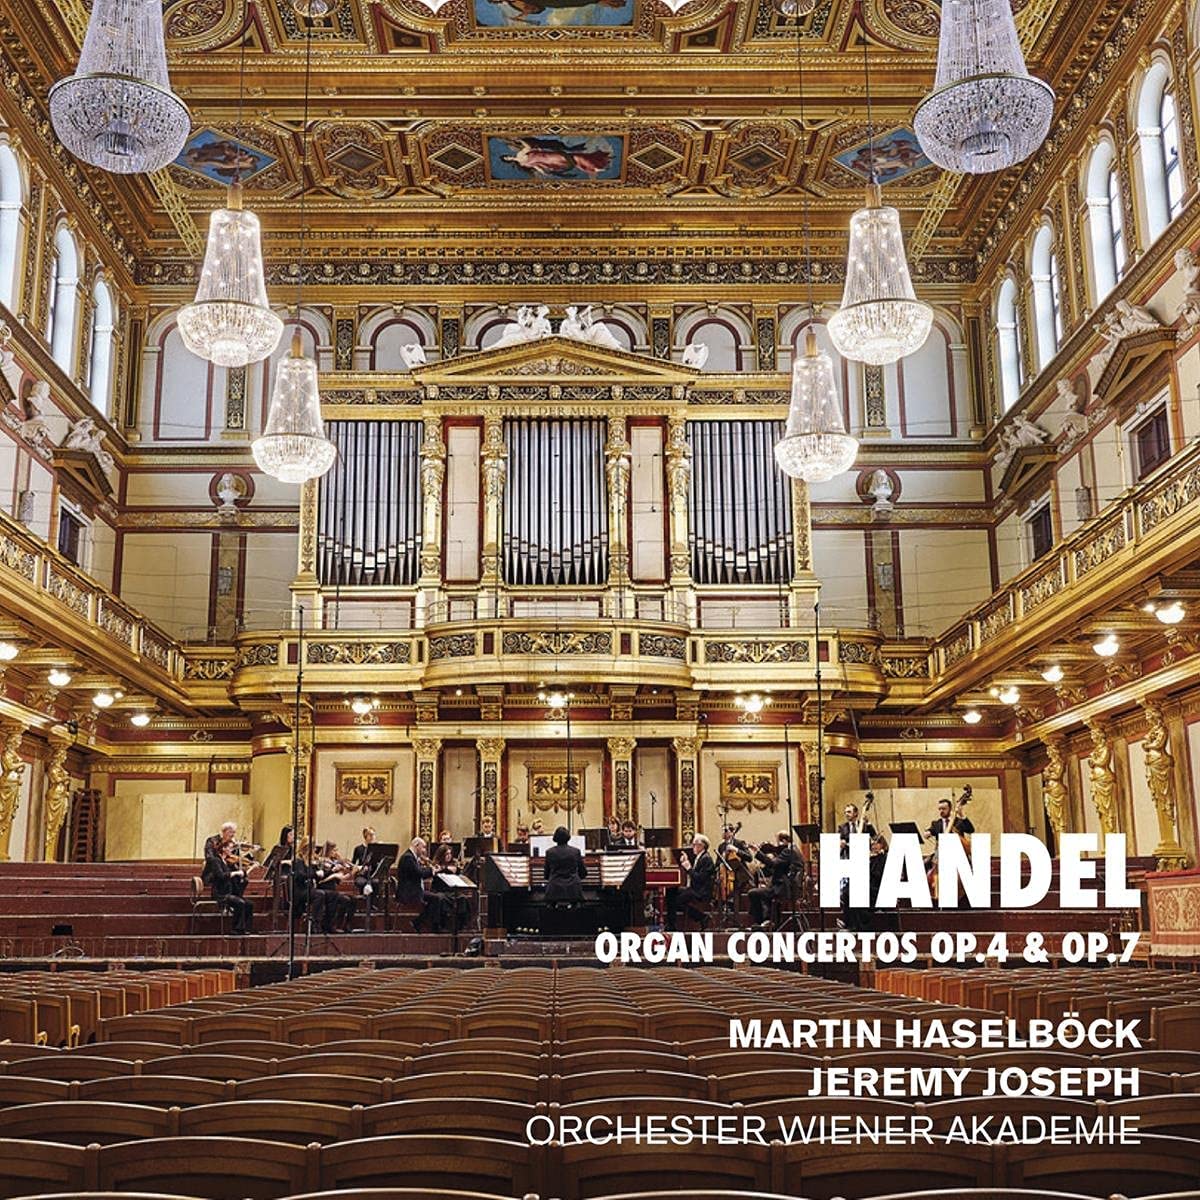 Handel organ concertos opp 4 and 7